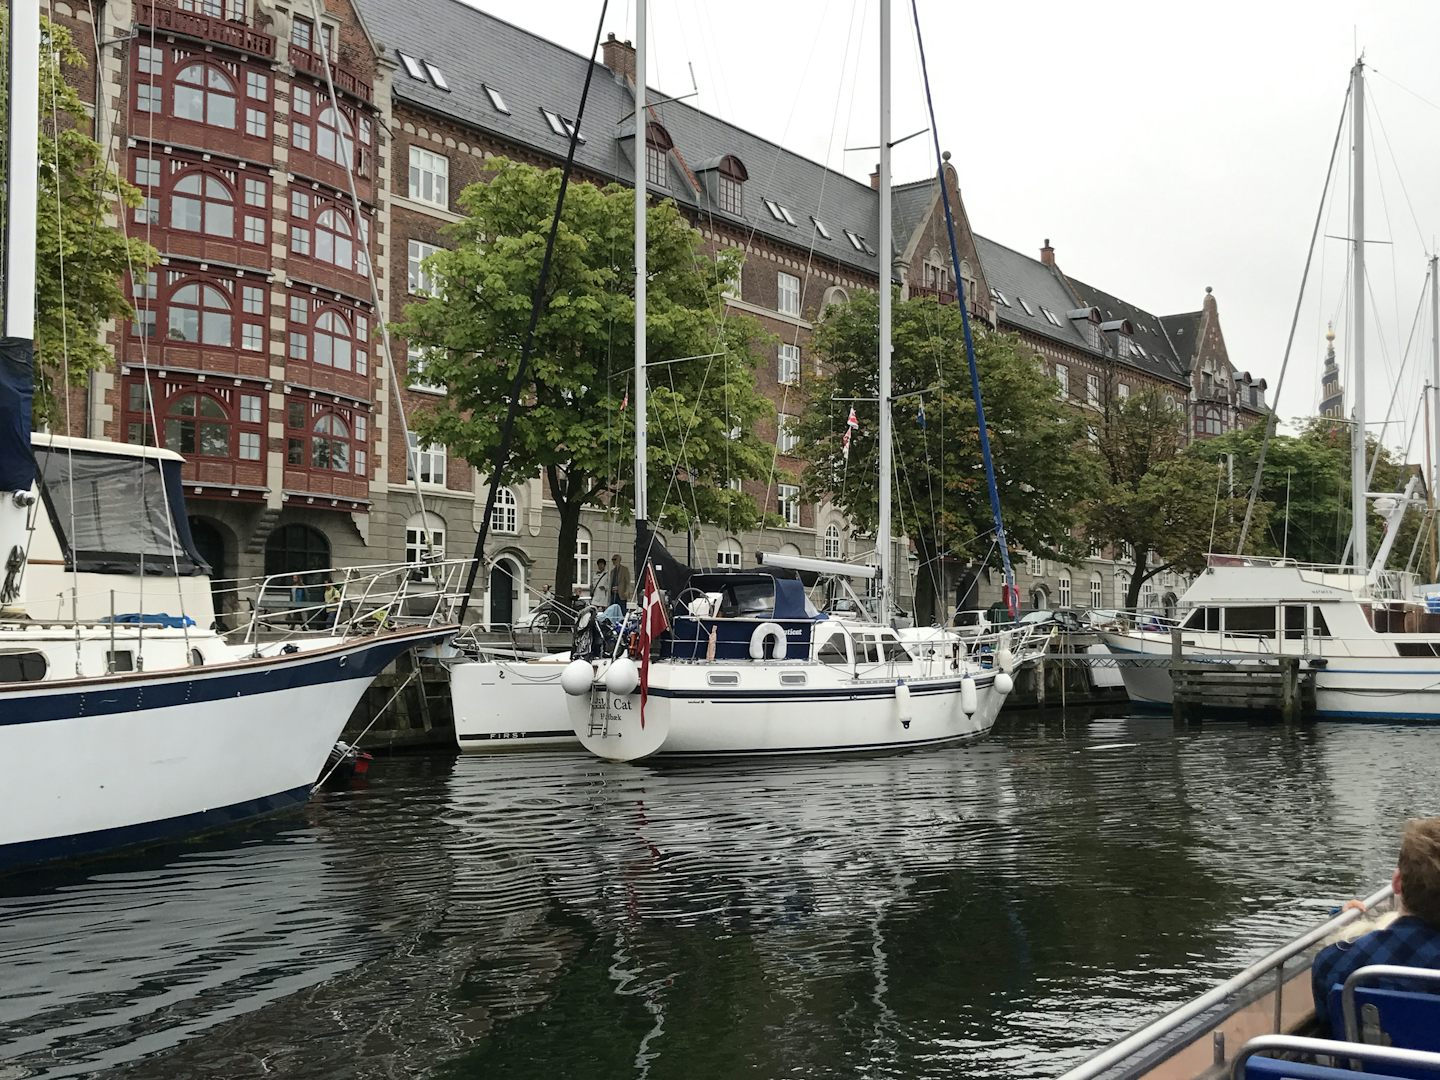 Copenhagen canals